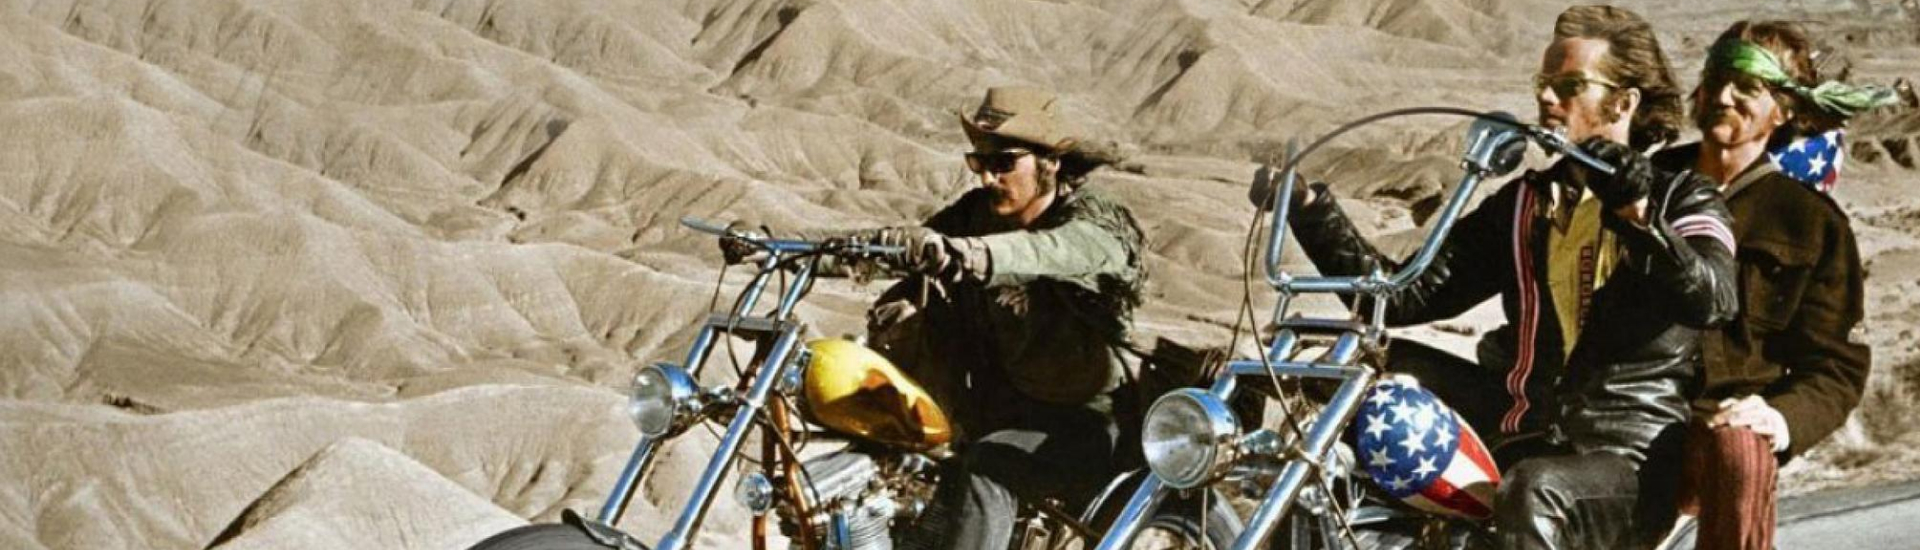 bikers-movie-film-article